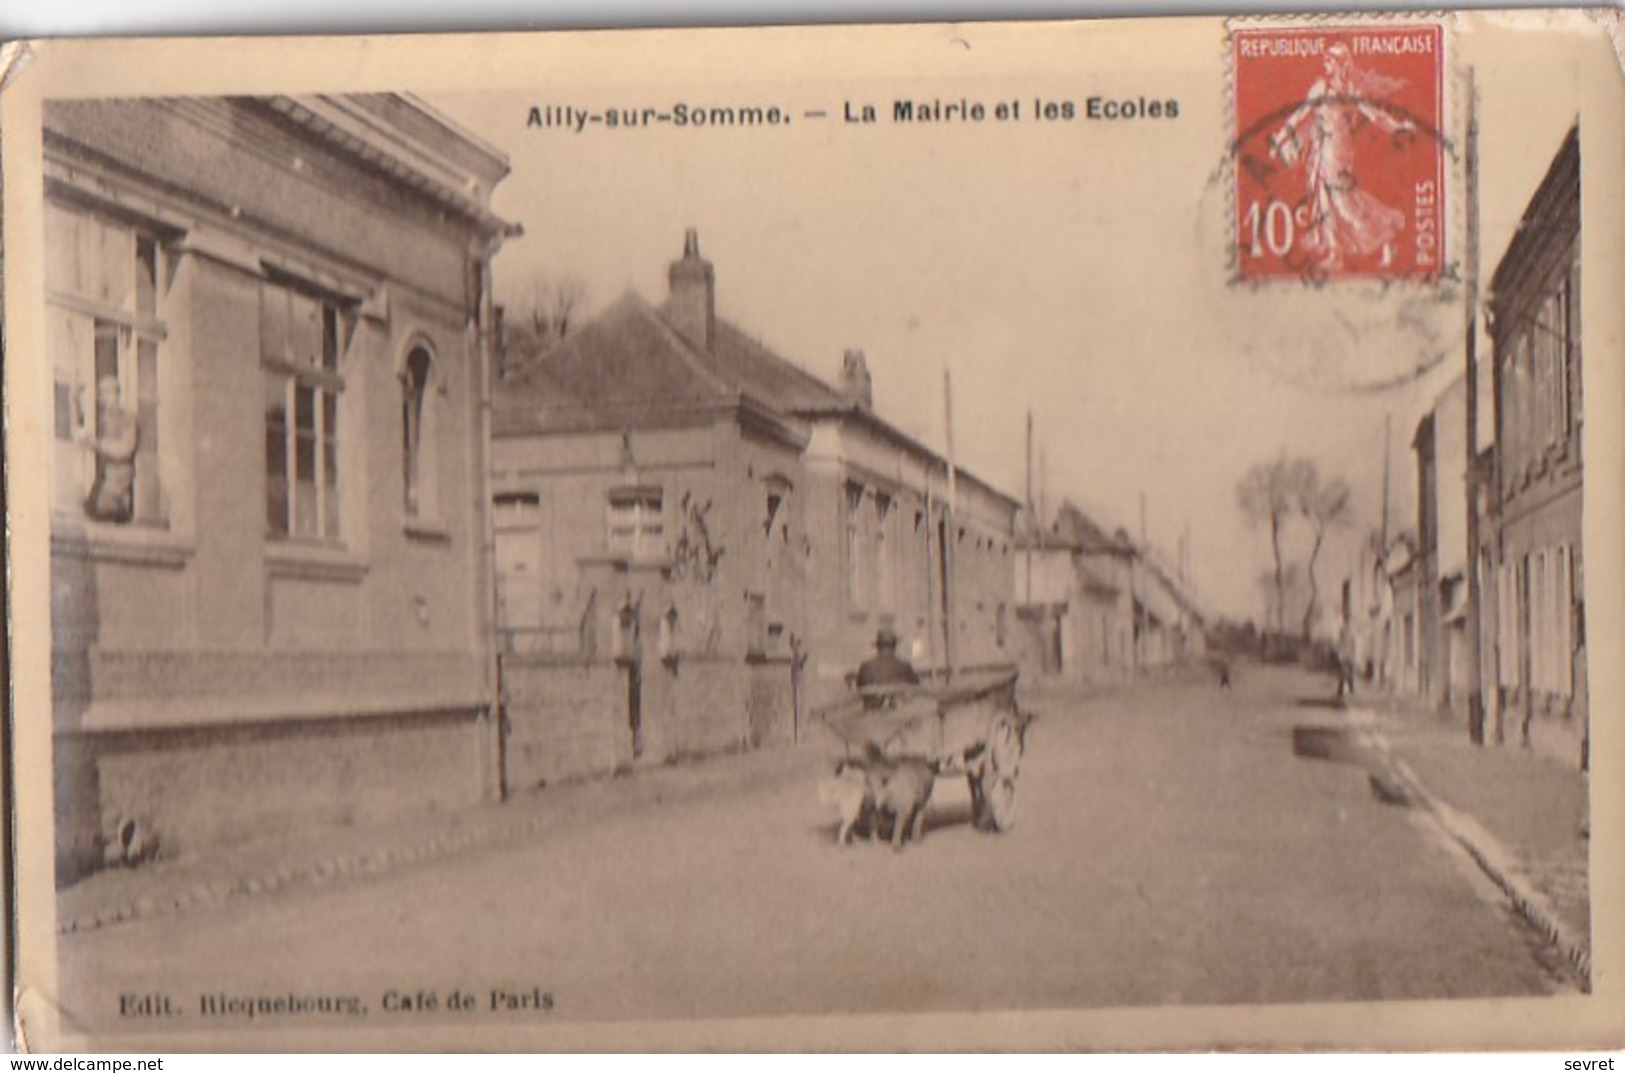 AILLY-sur-SOMME. - La Mairie Et Les Ecoles. Attelage. Carte RARE - Ailly Le Haut Clocher